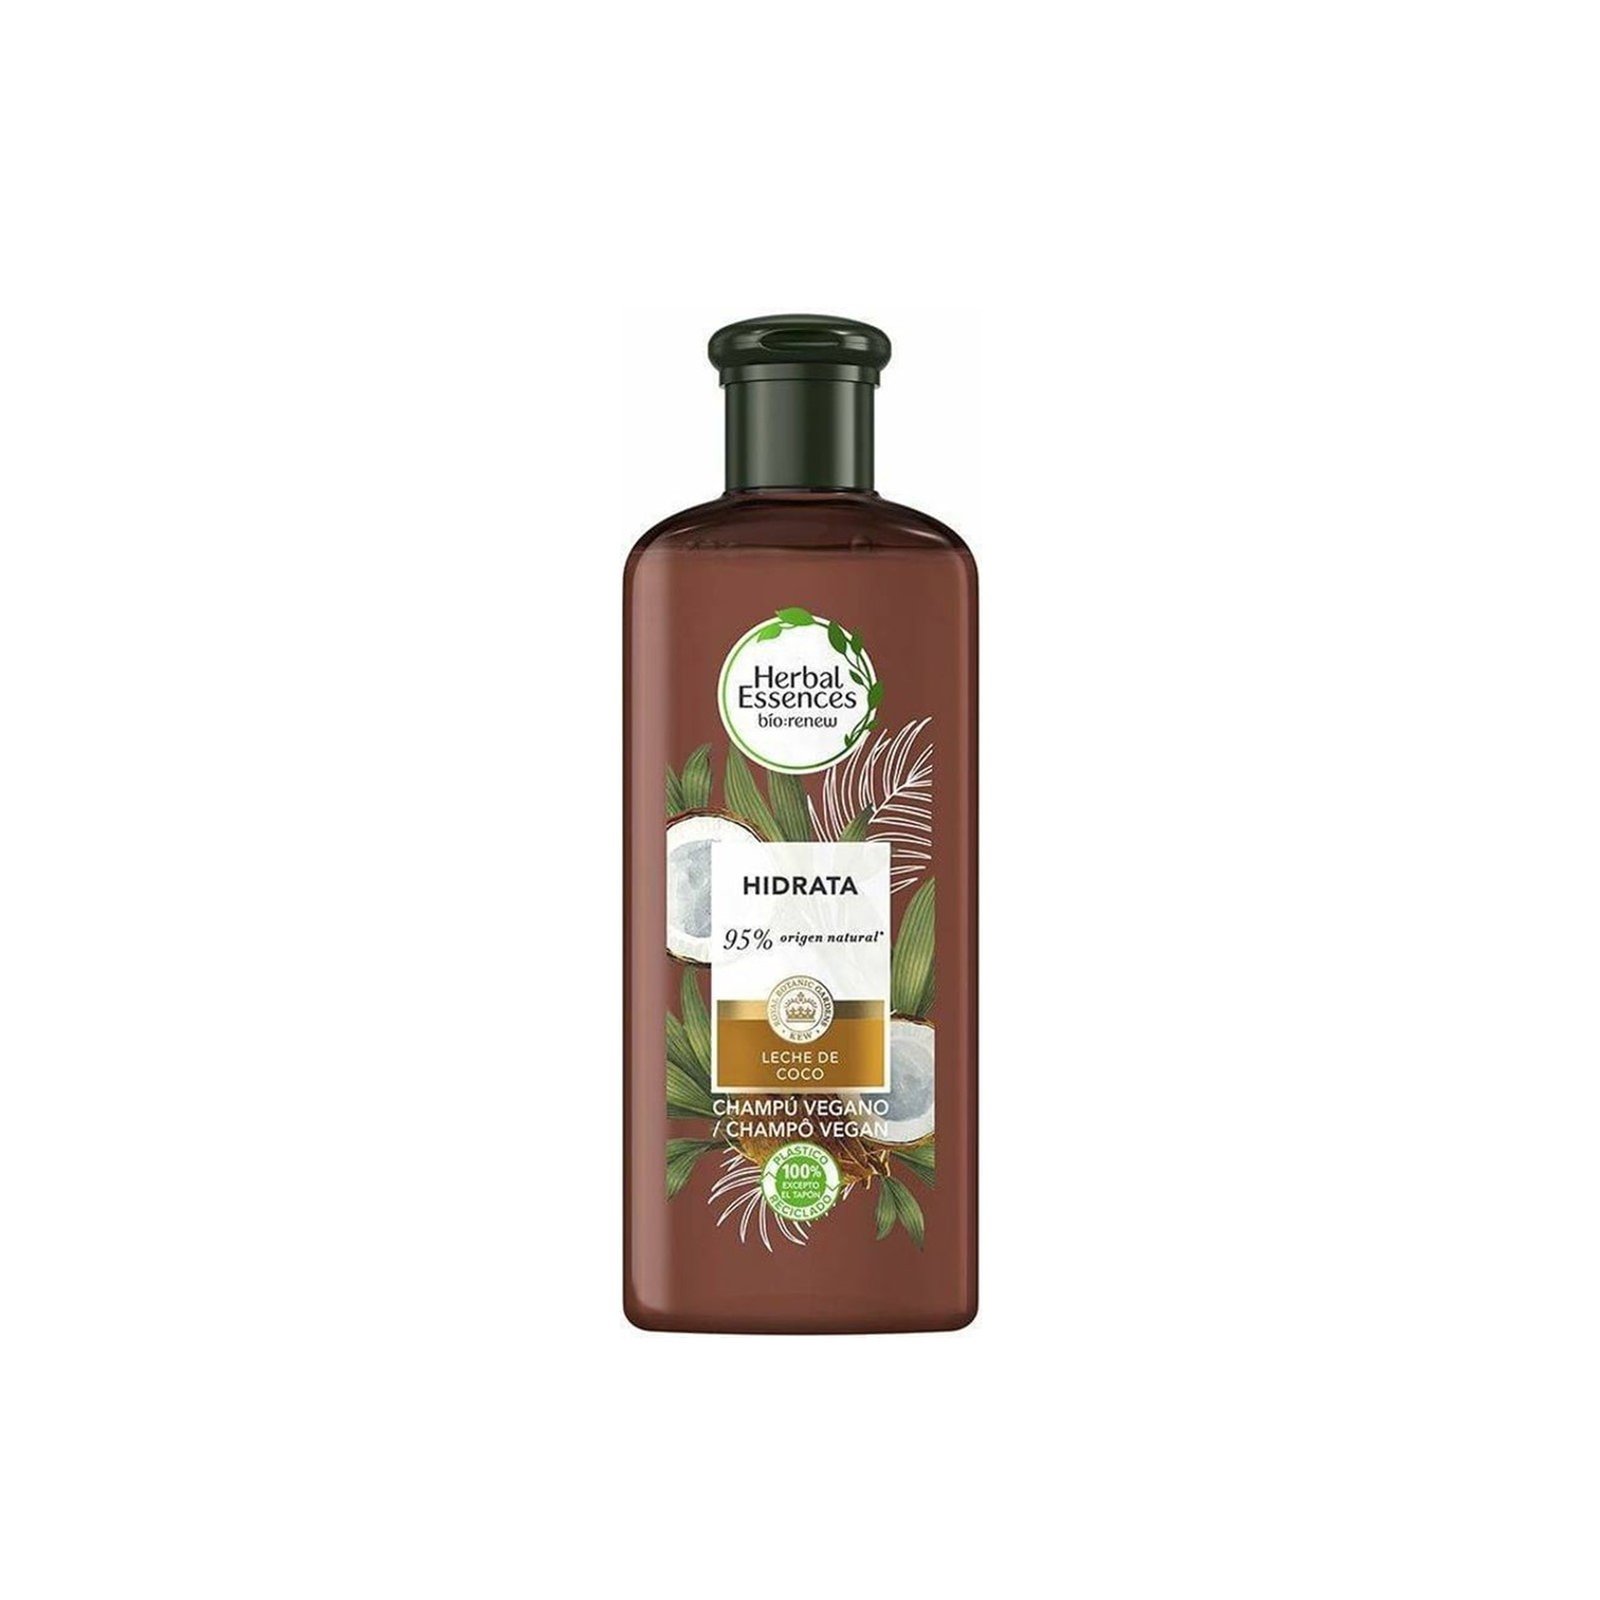 Herbal Essences Bio Renew Hydrate Coconut Milk Shampoo 250ml (8.45fl oz)